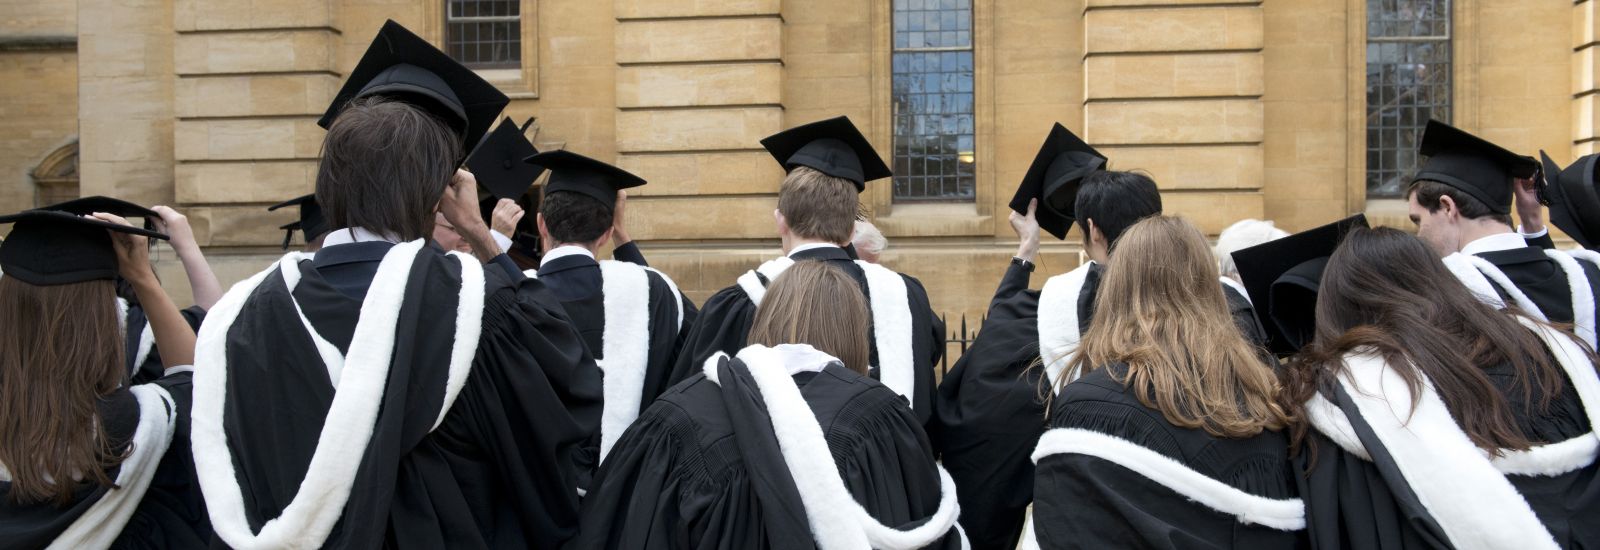 Degree ceremonies University of Oxford